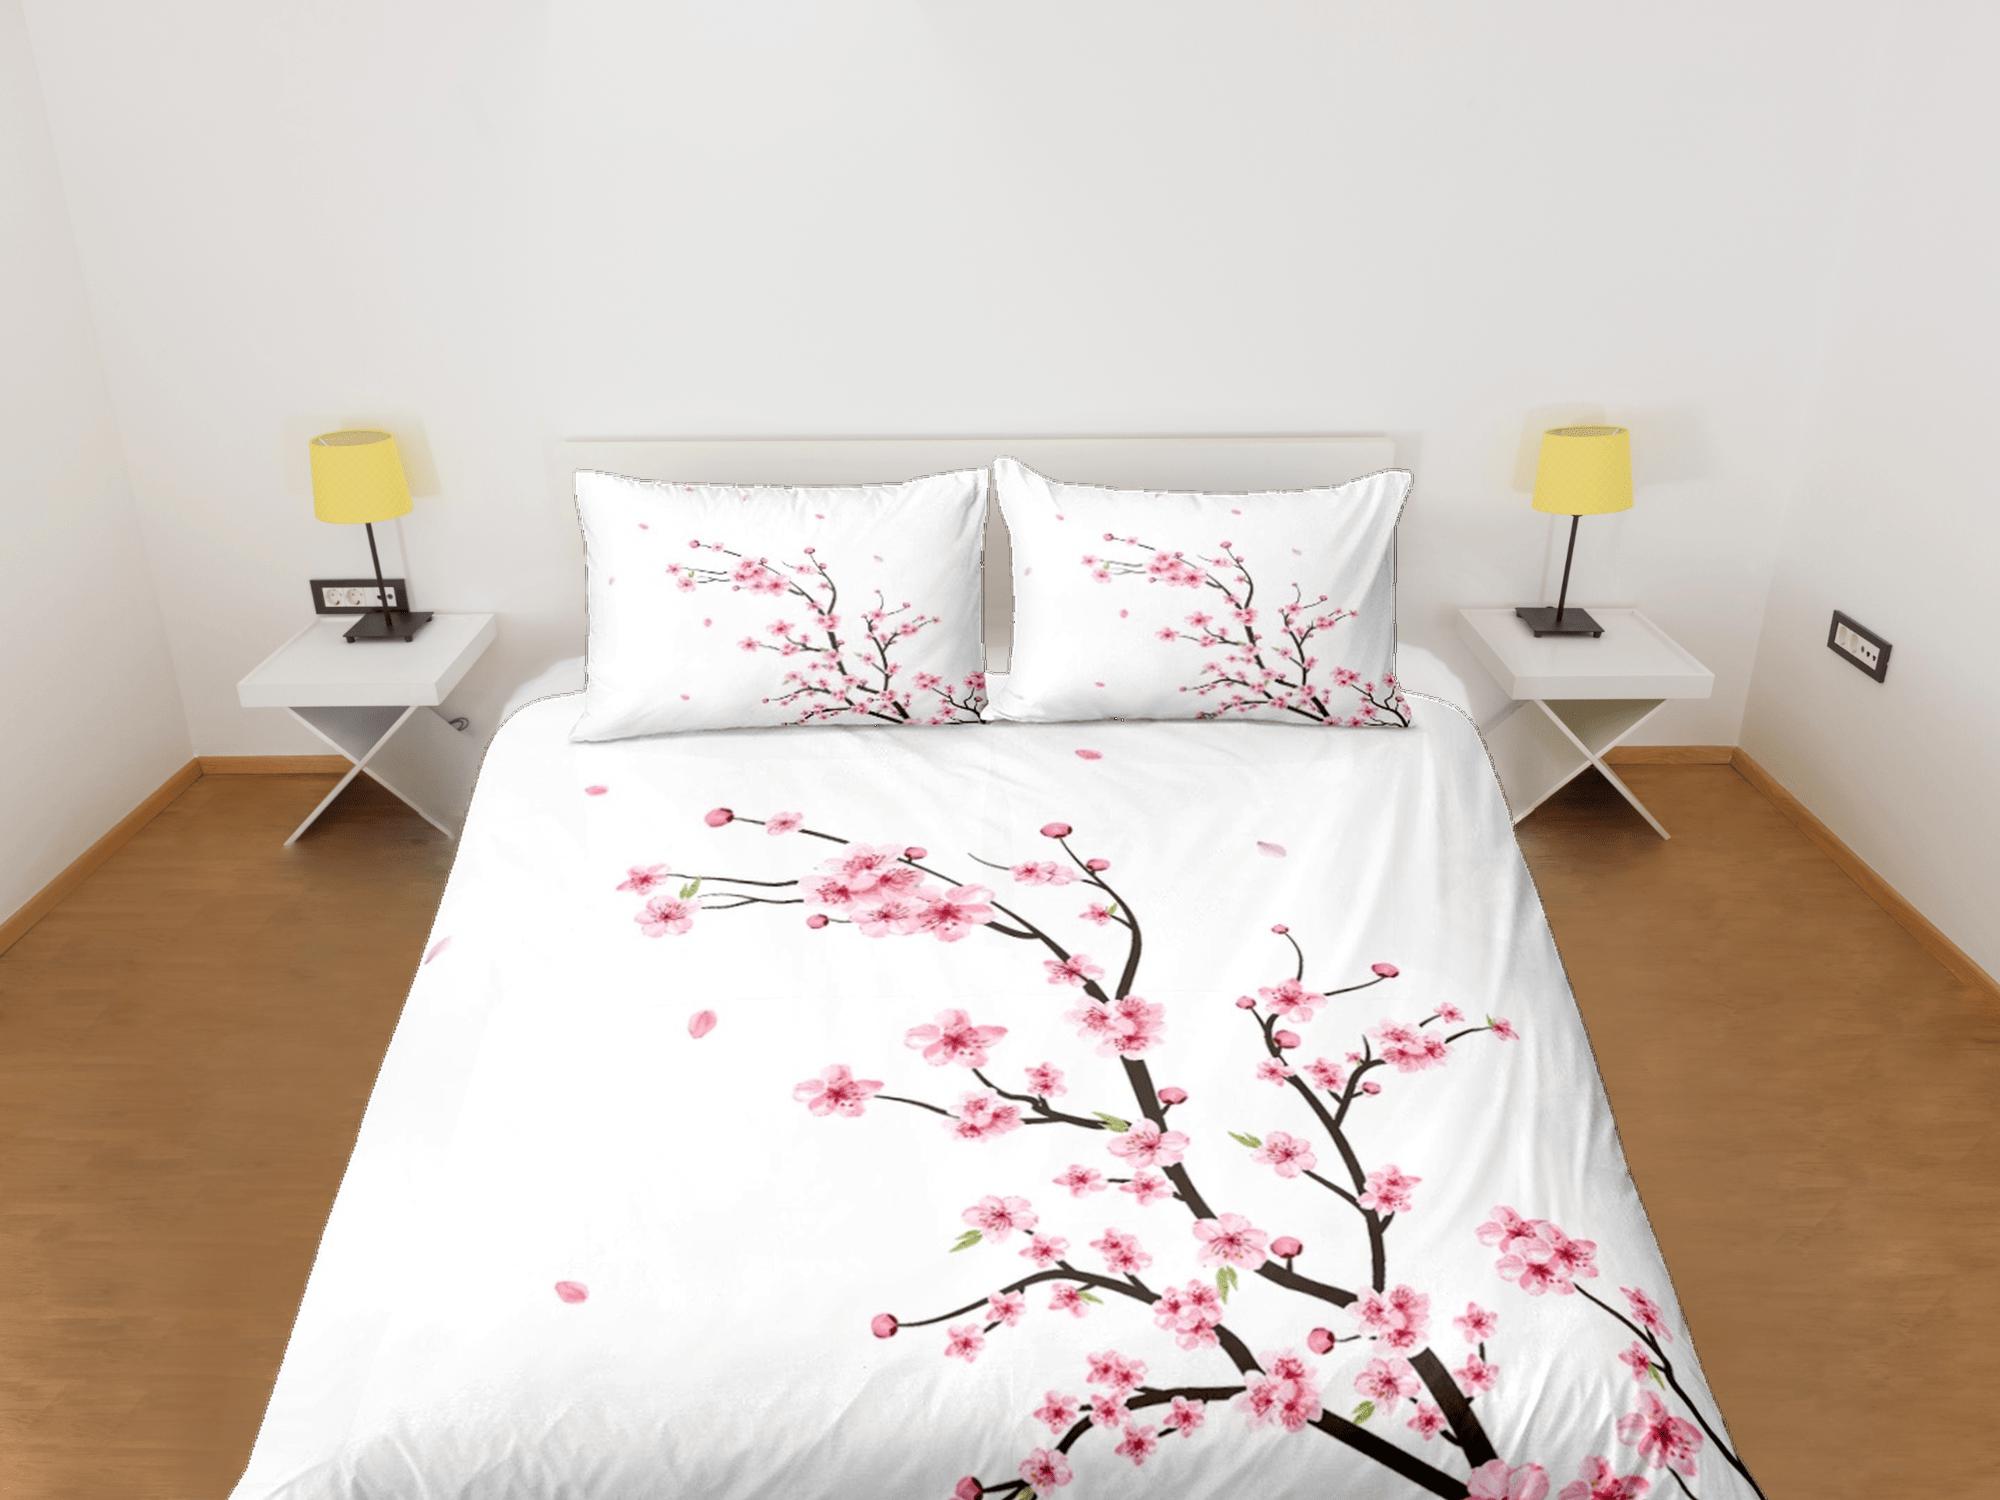 daintyduvet Simple cherry blossom bedding floral prints white duvet cover queen, king, boho bedding designer bedspread full size bedding aesthetic